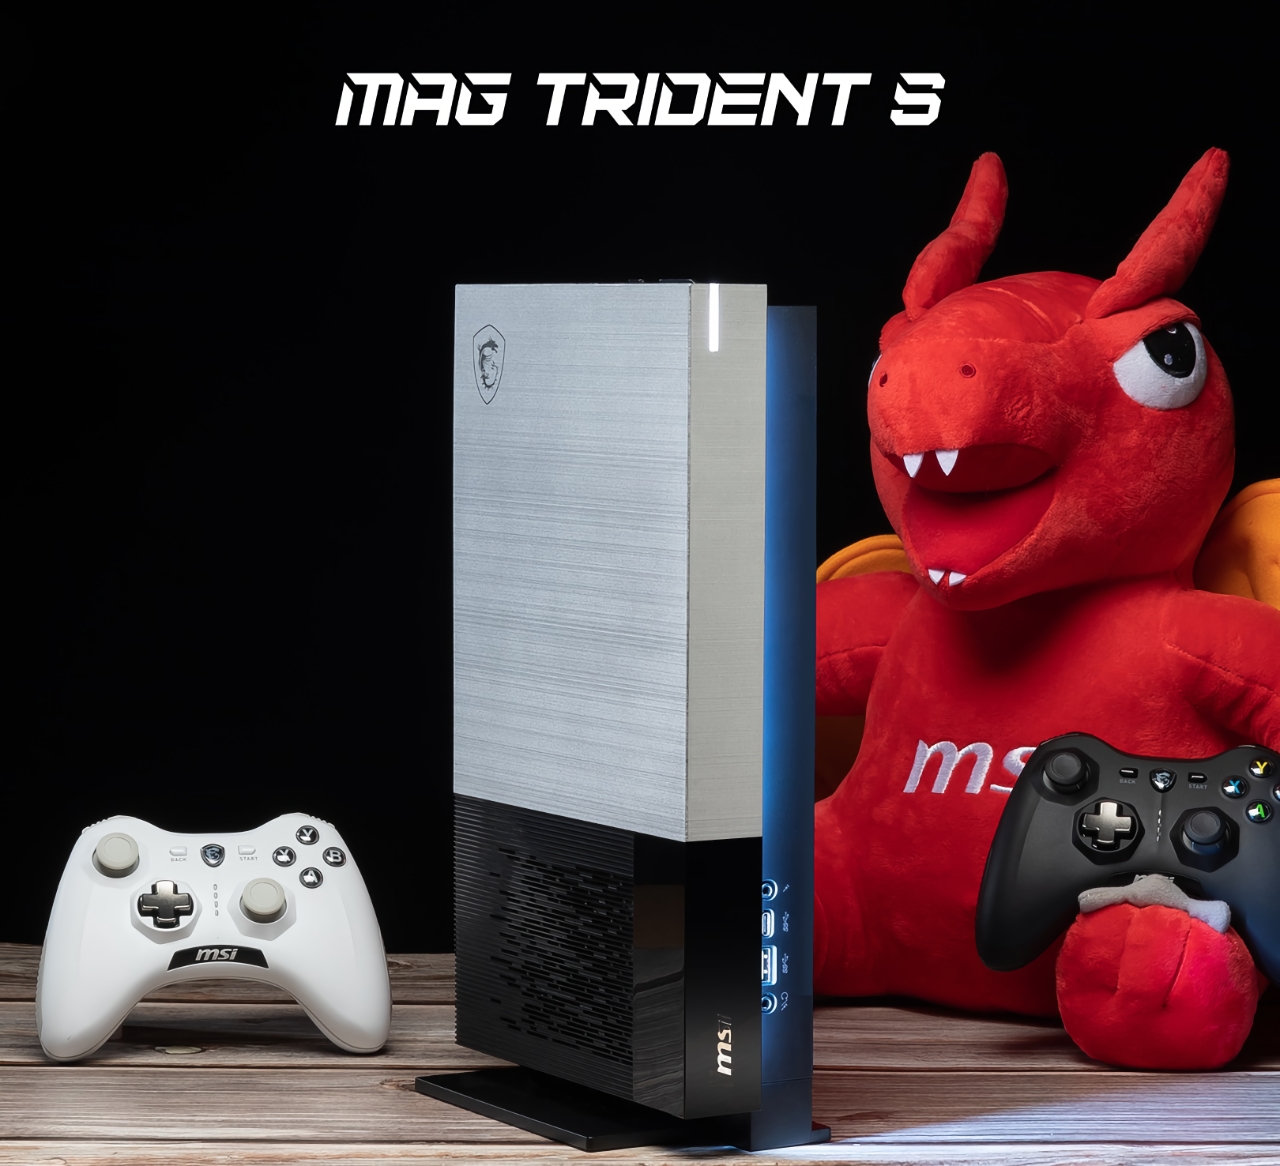 Niespodziewanie: MSI wyda konsolę do gier MAG Trident S z procesorem AMD Ryzen 7 5700G na pokładzie